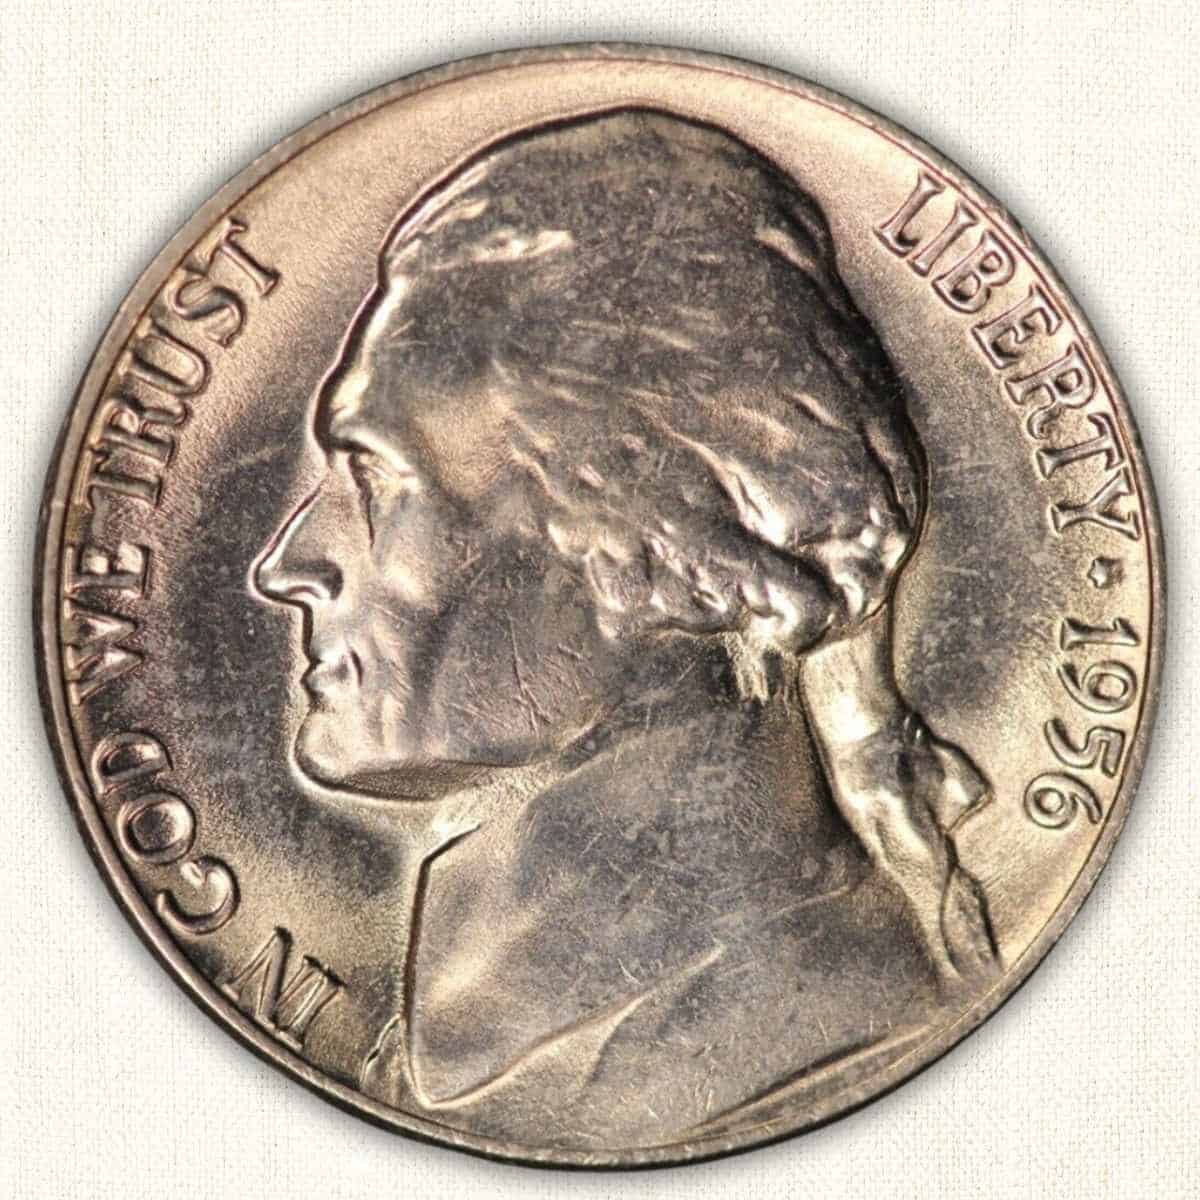 1956 Jefferson Nickel oberse elements